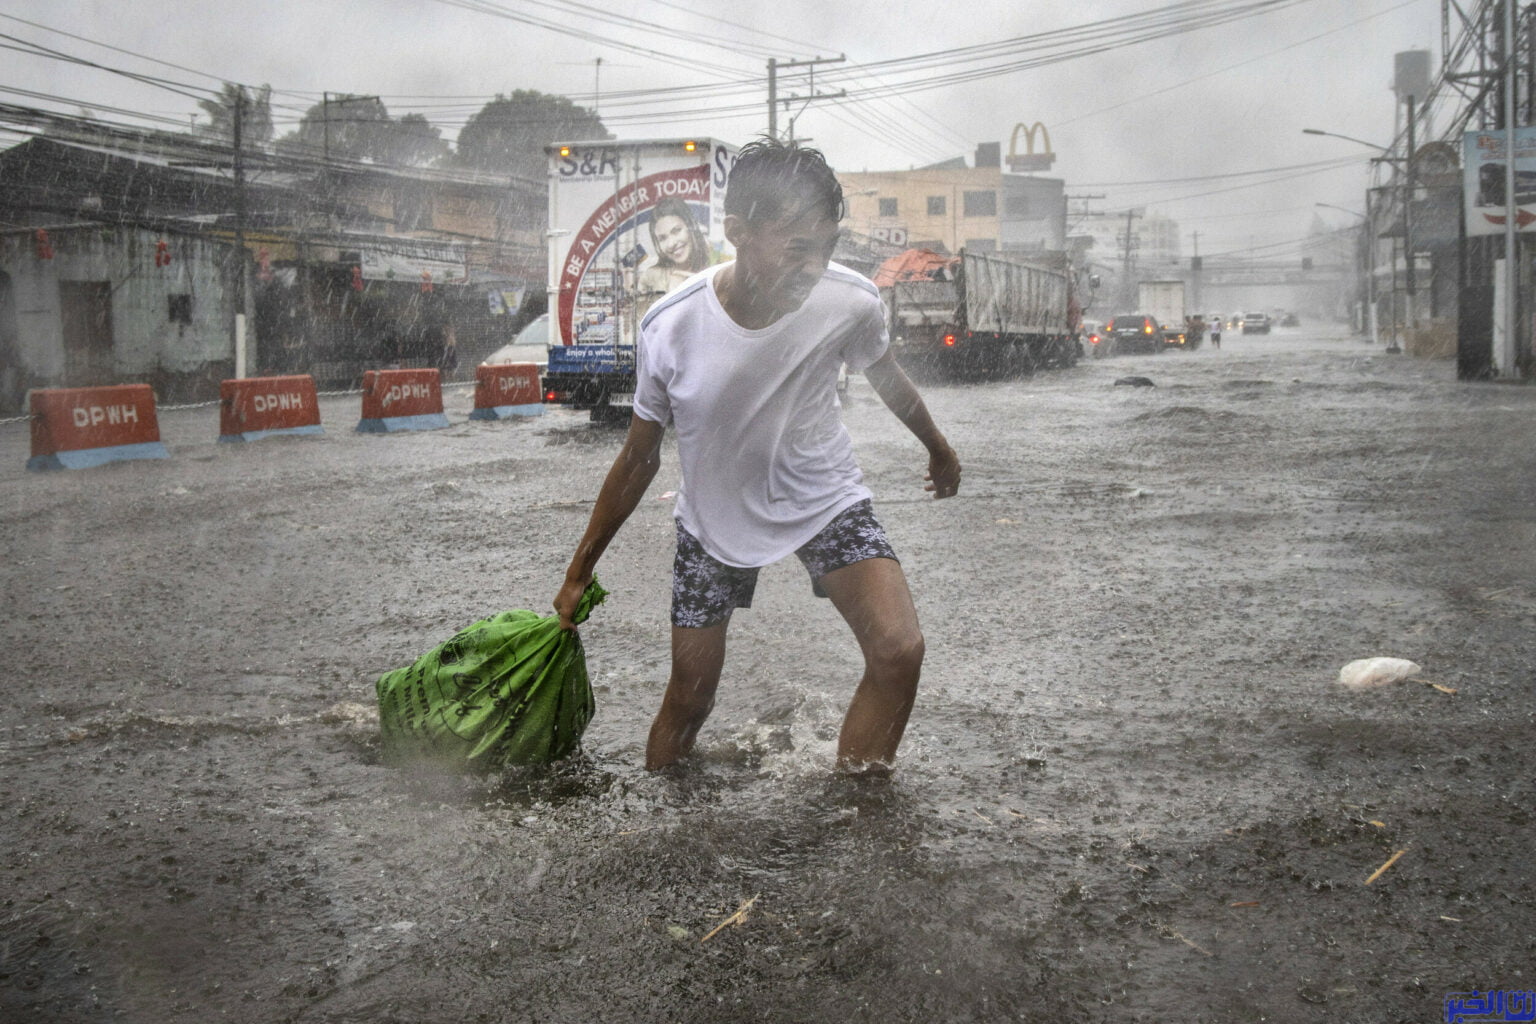 حالة تأهب قصوى في الفلبين بسبب العاصفة "نورو"